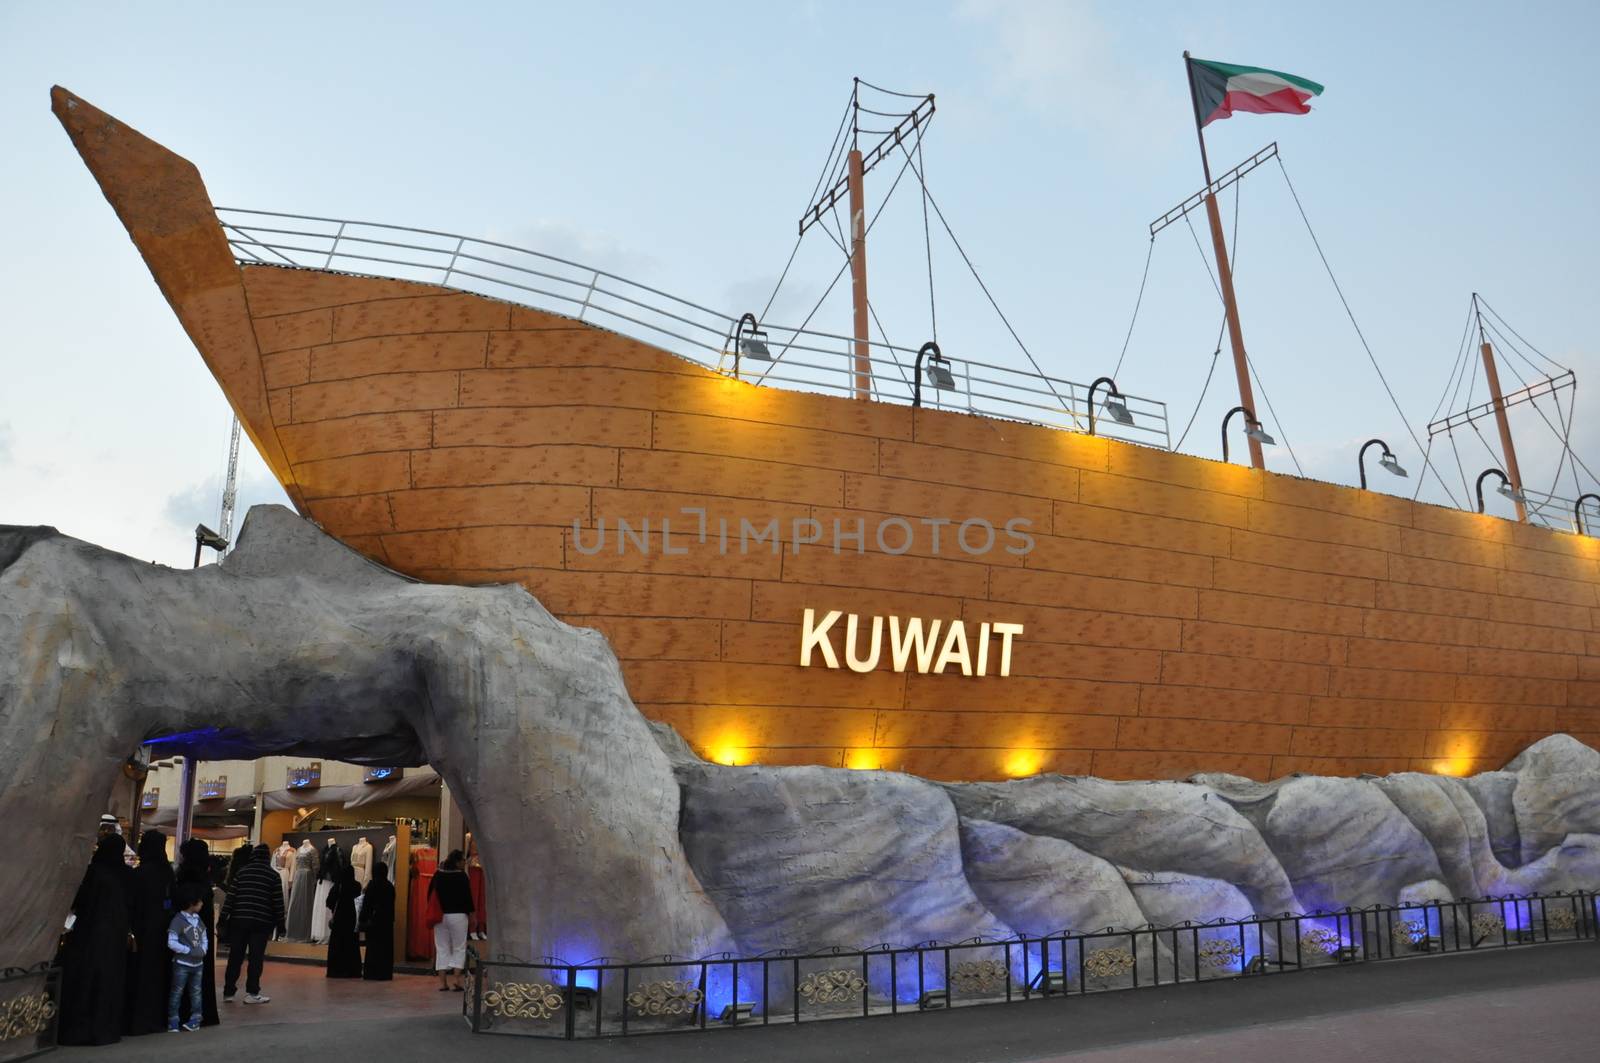 Kuwait pavilion at Global Village in Dubai, UAE by sainaniritu